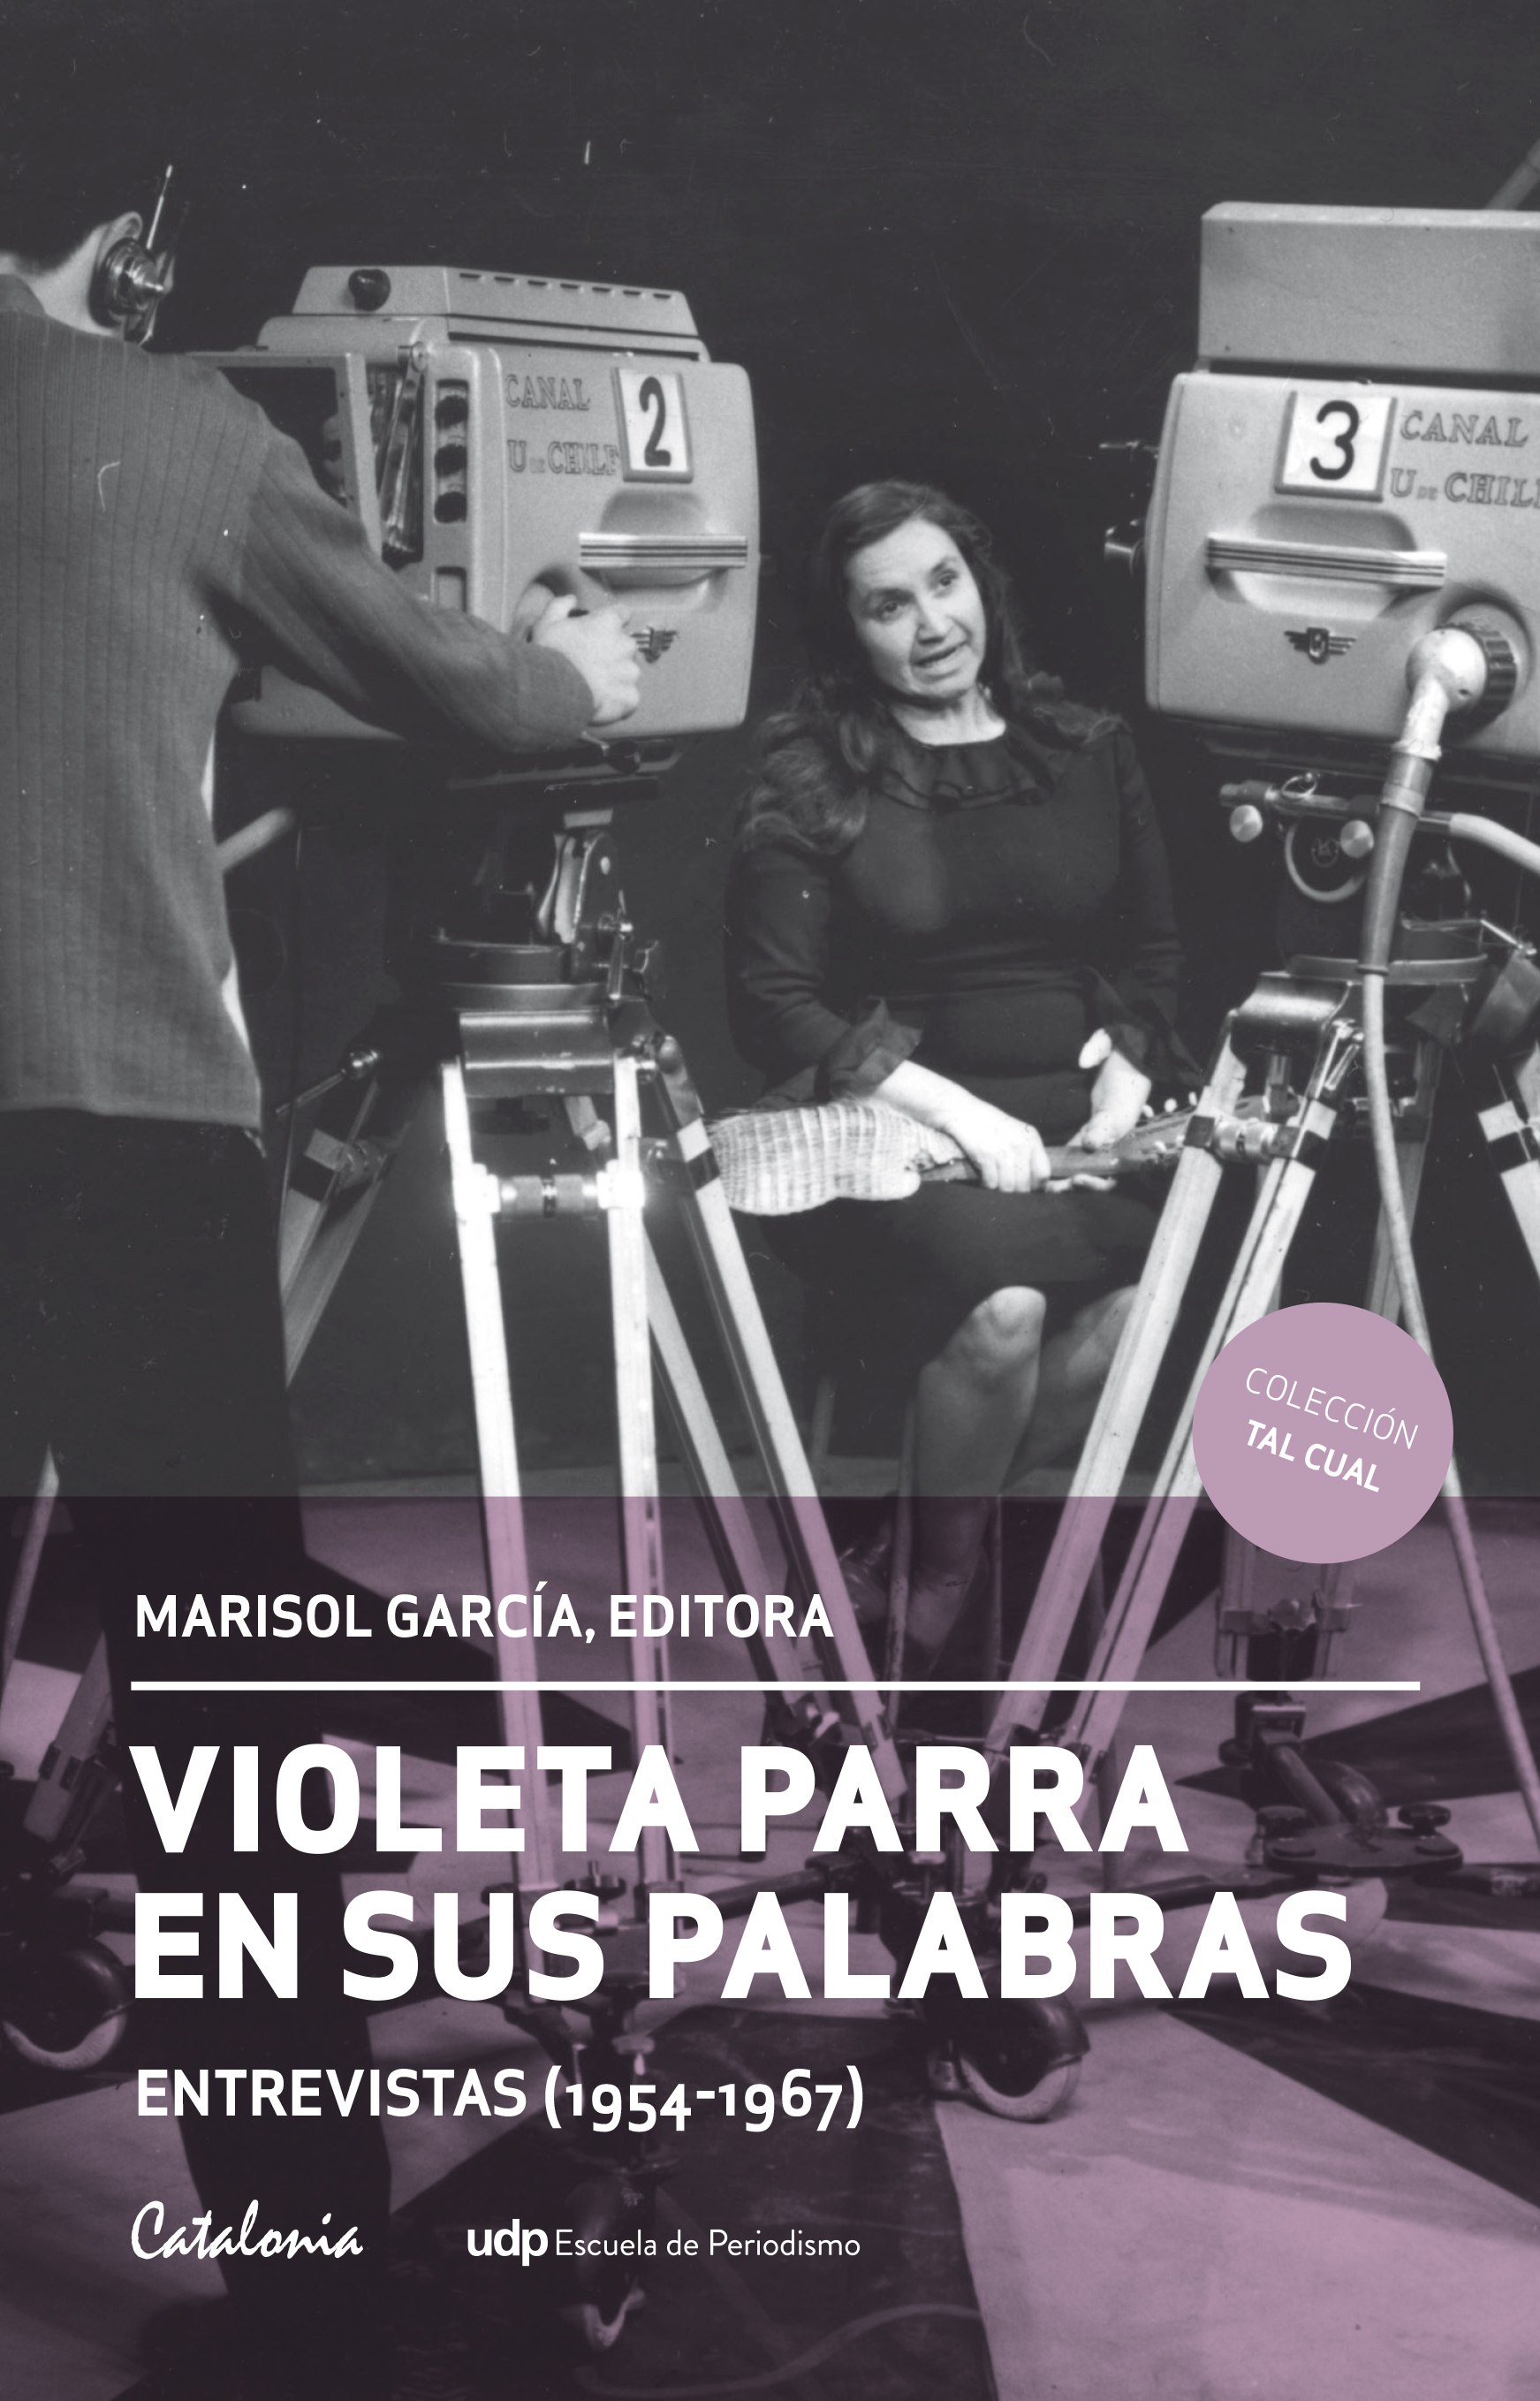 Libro "Violeta Parra en sus palabras" 